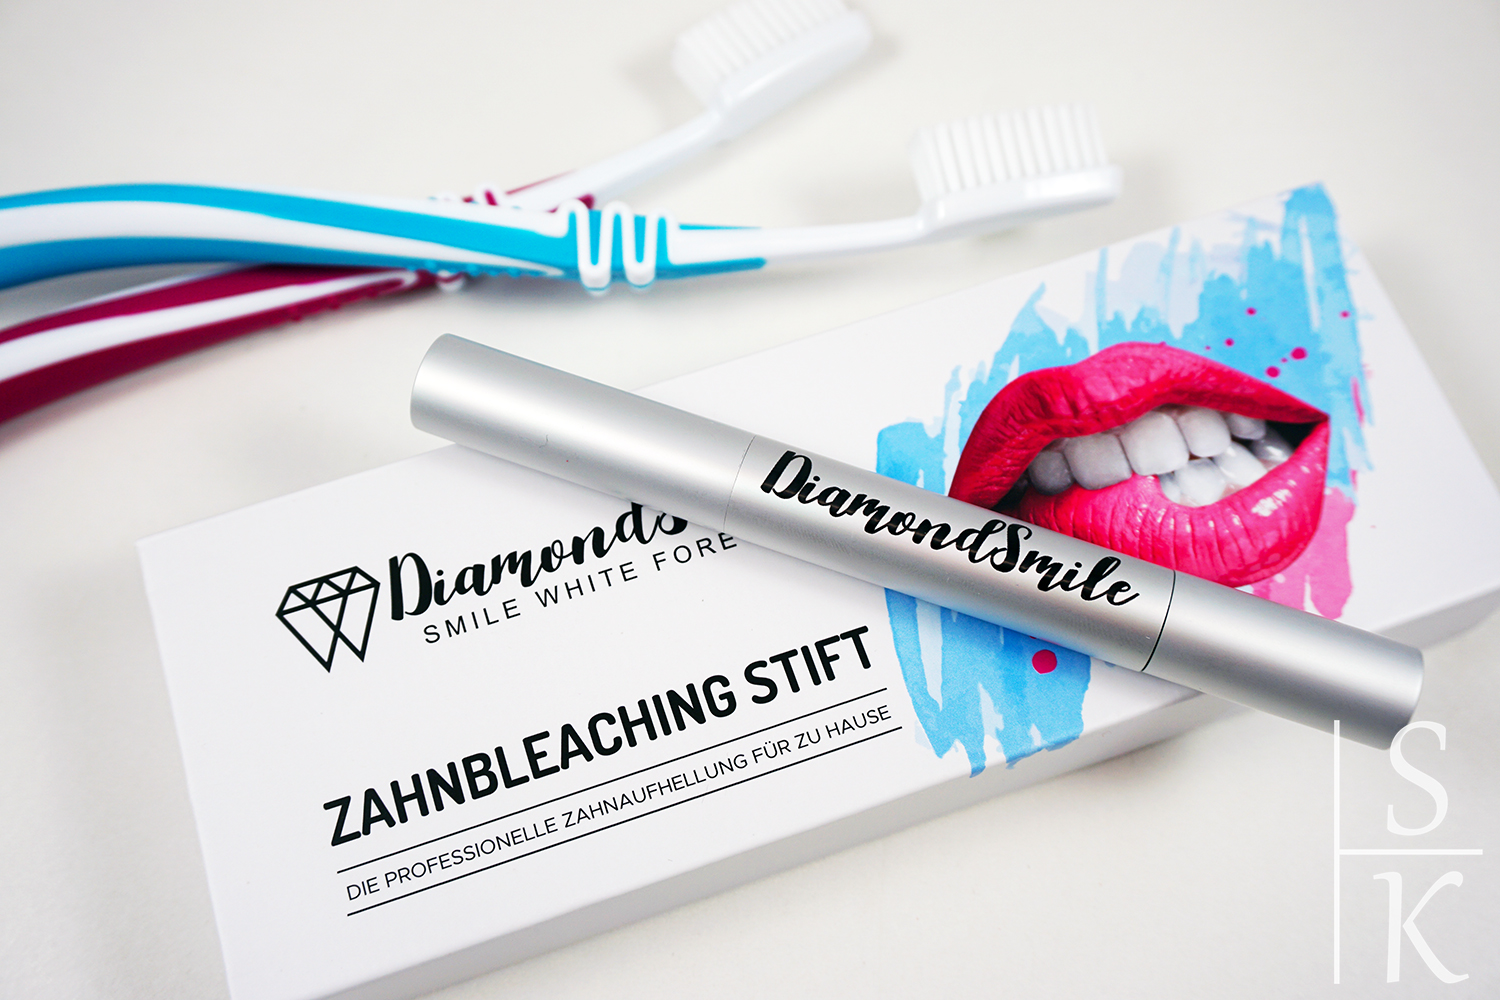 DiamondSmile - Produkte für Zahnbleaching @Horizont-Blog